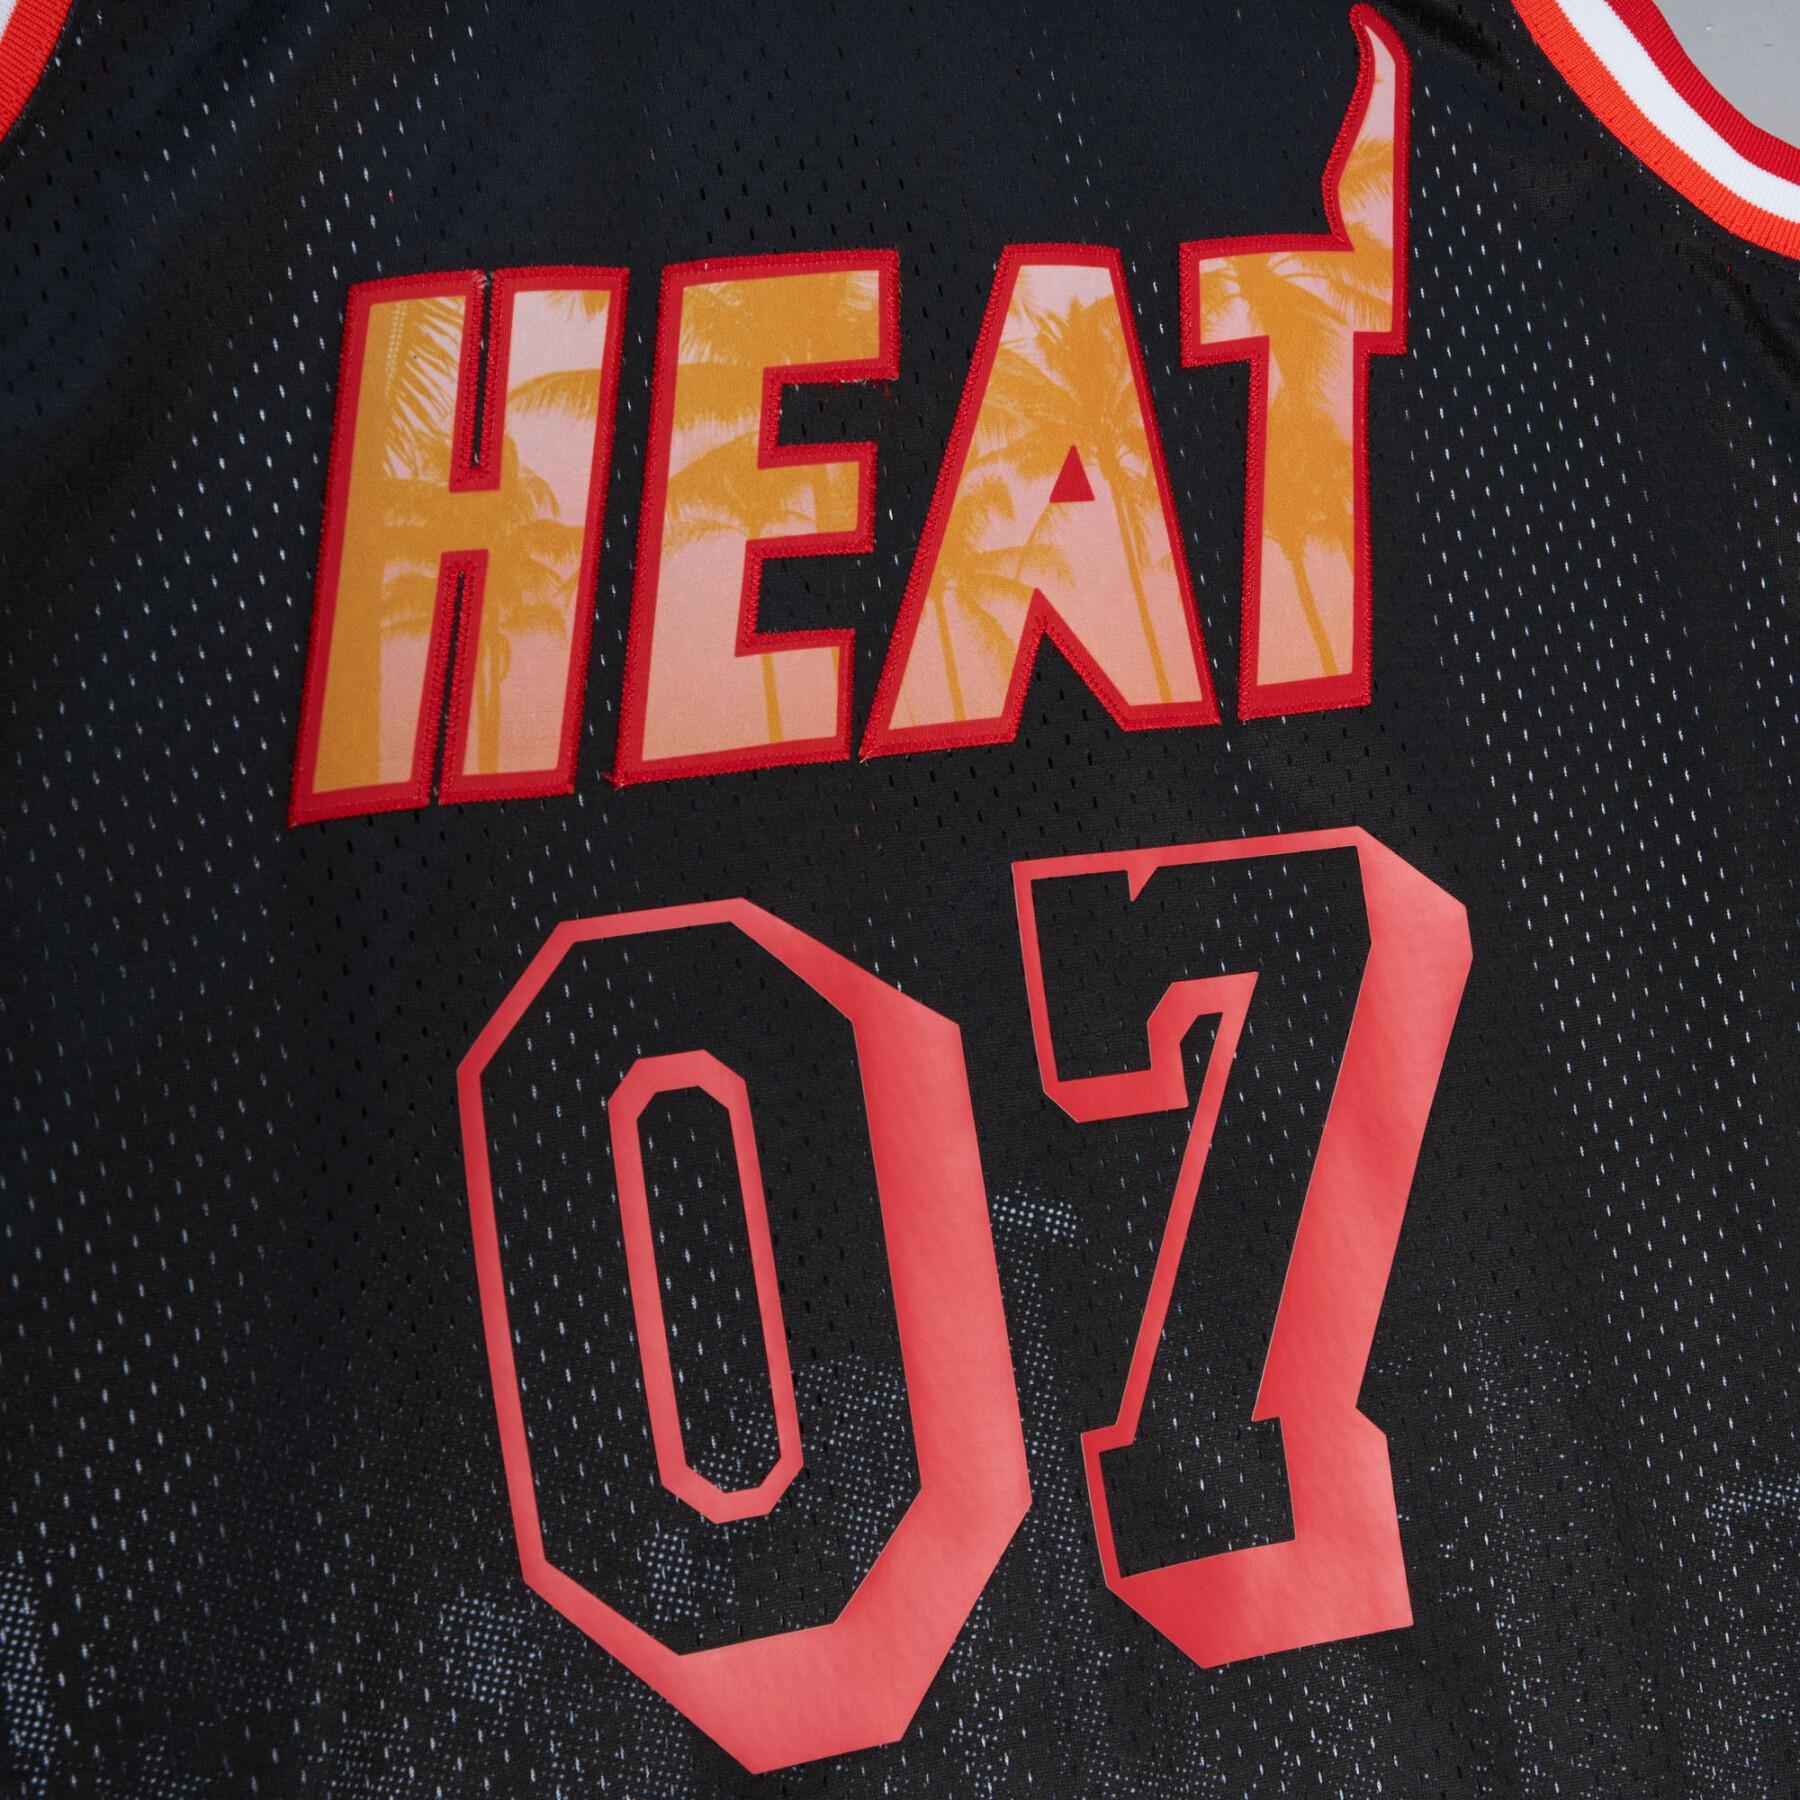 CamisetaMiami Heat Nicky Jam Swingman